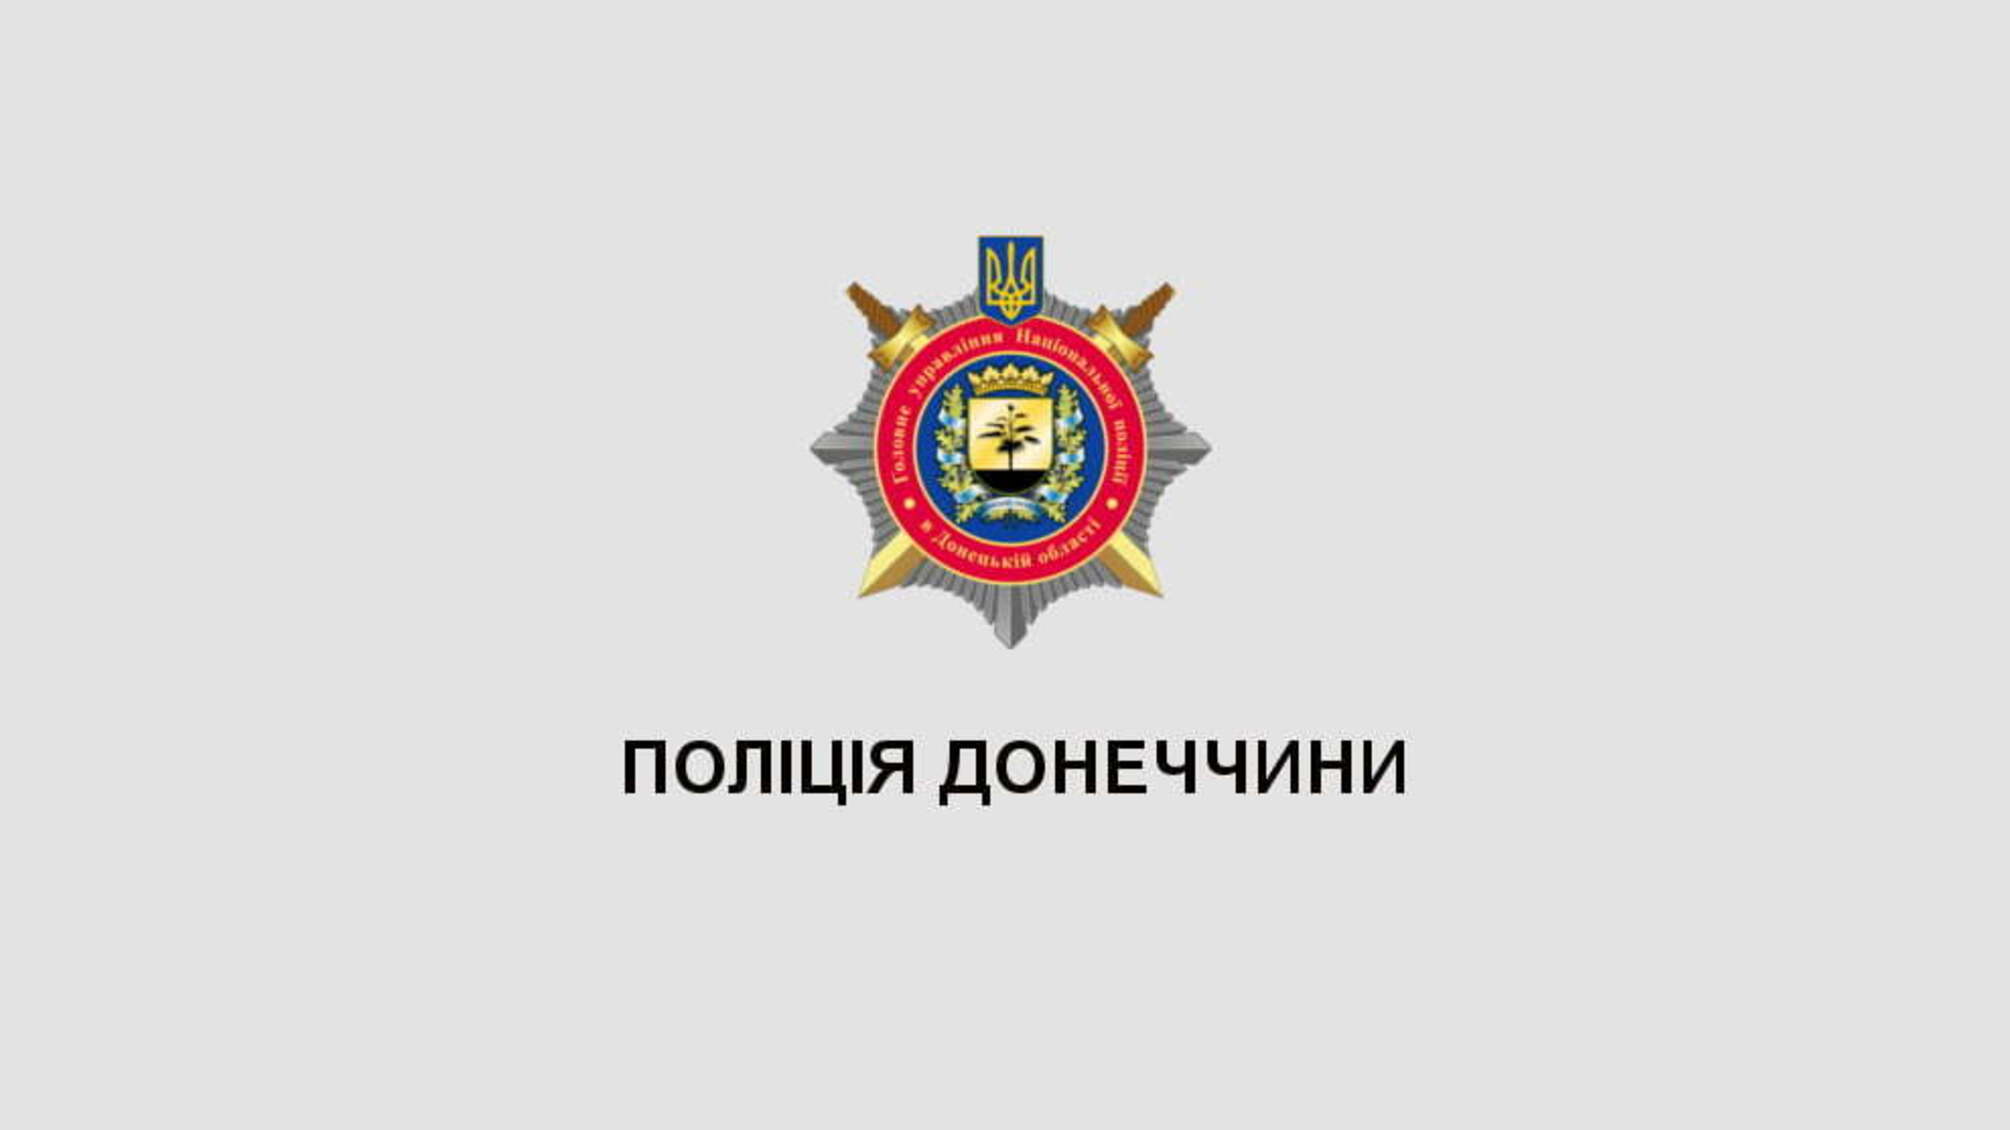 Поліція Донеччини висловлює співчуття родині загиблого колеги - командира батальйону «Луганськ-1» Сергія Губанова